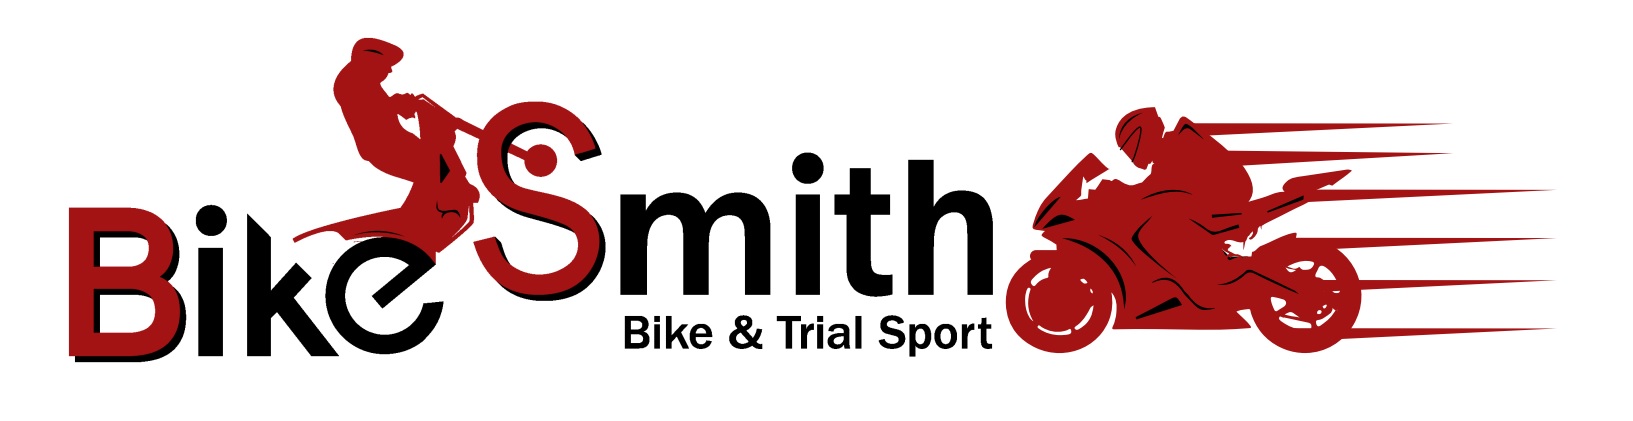 Bike Smith - Bike & Trial Sport